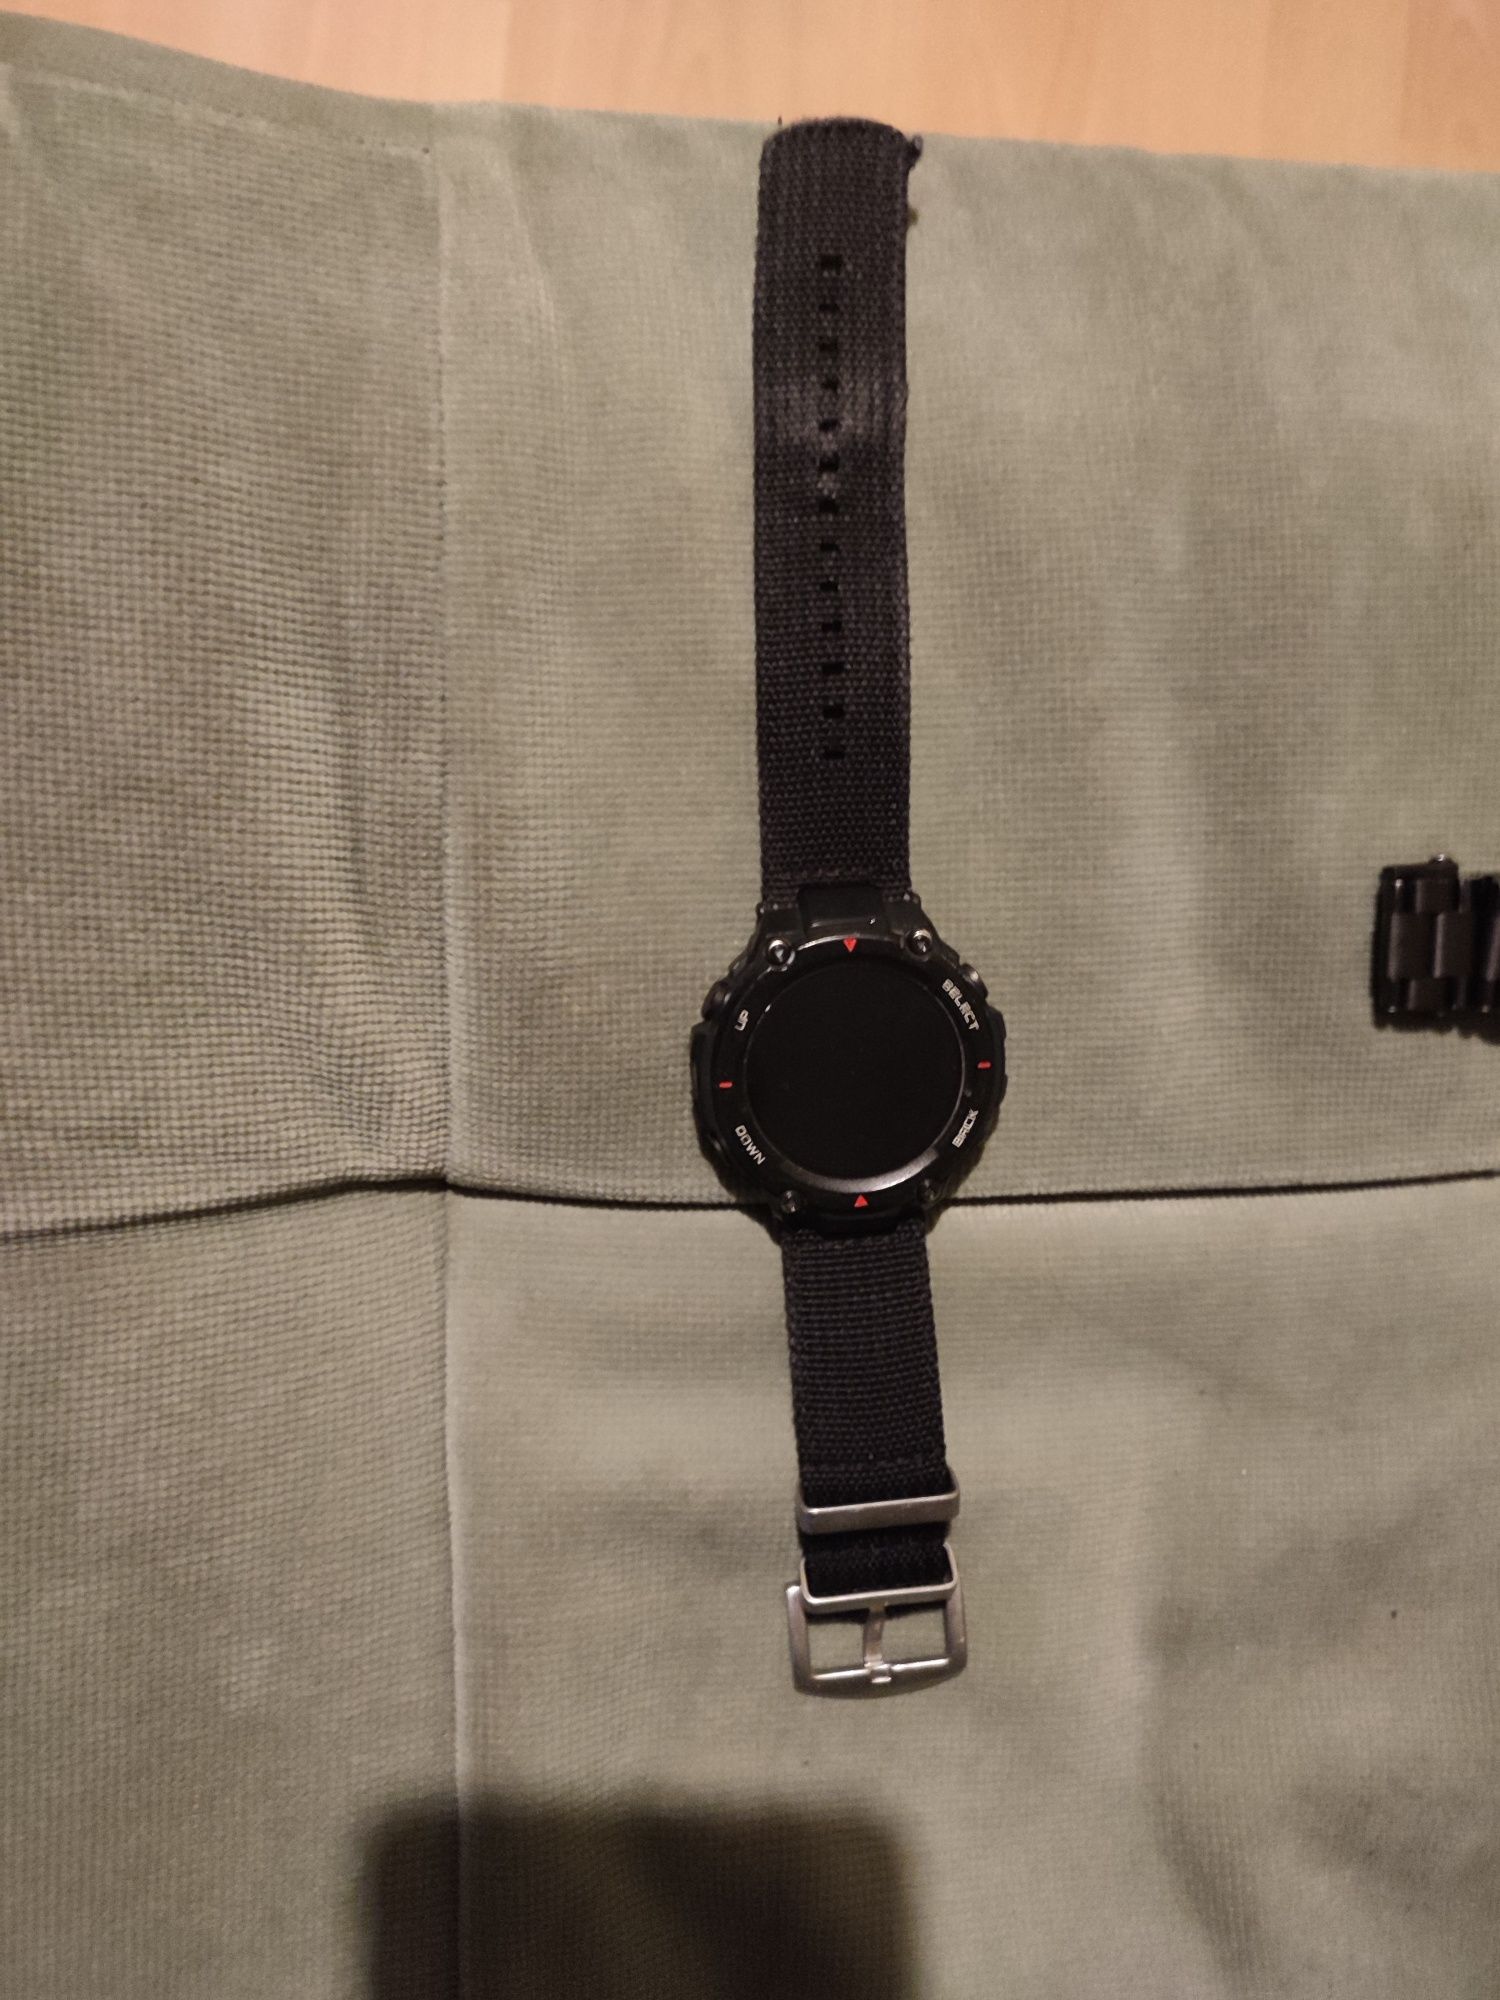 Pasek parciany i bransoleta do zegarek smartwatch t rex amazfit okazja